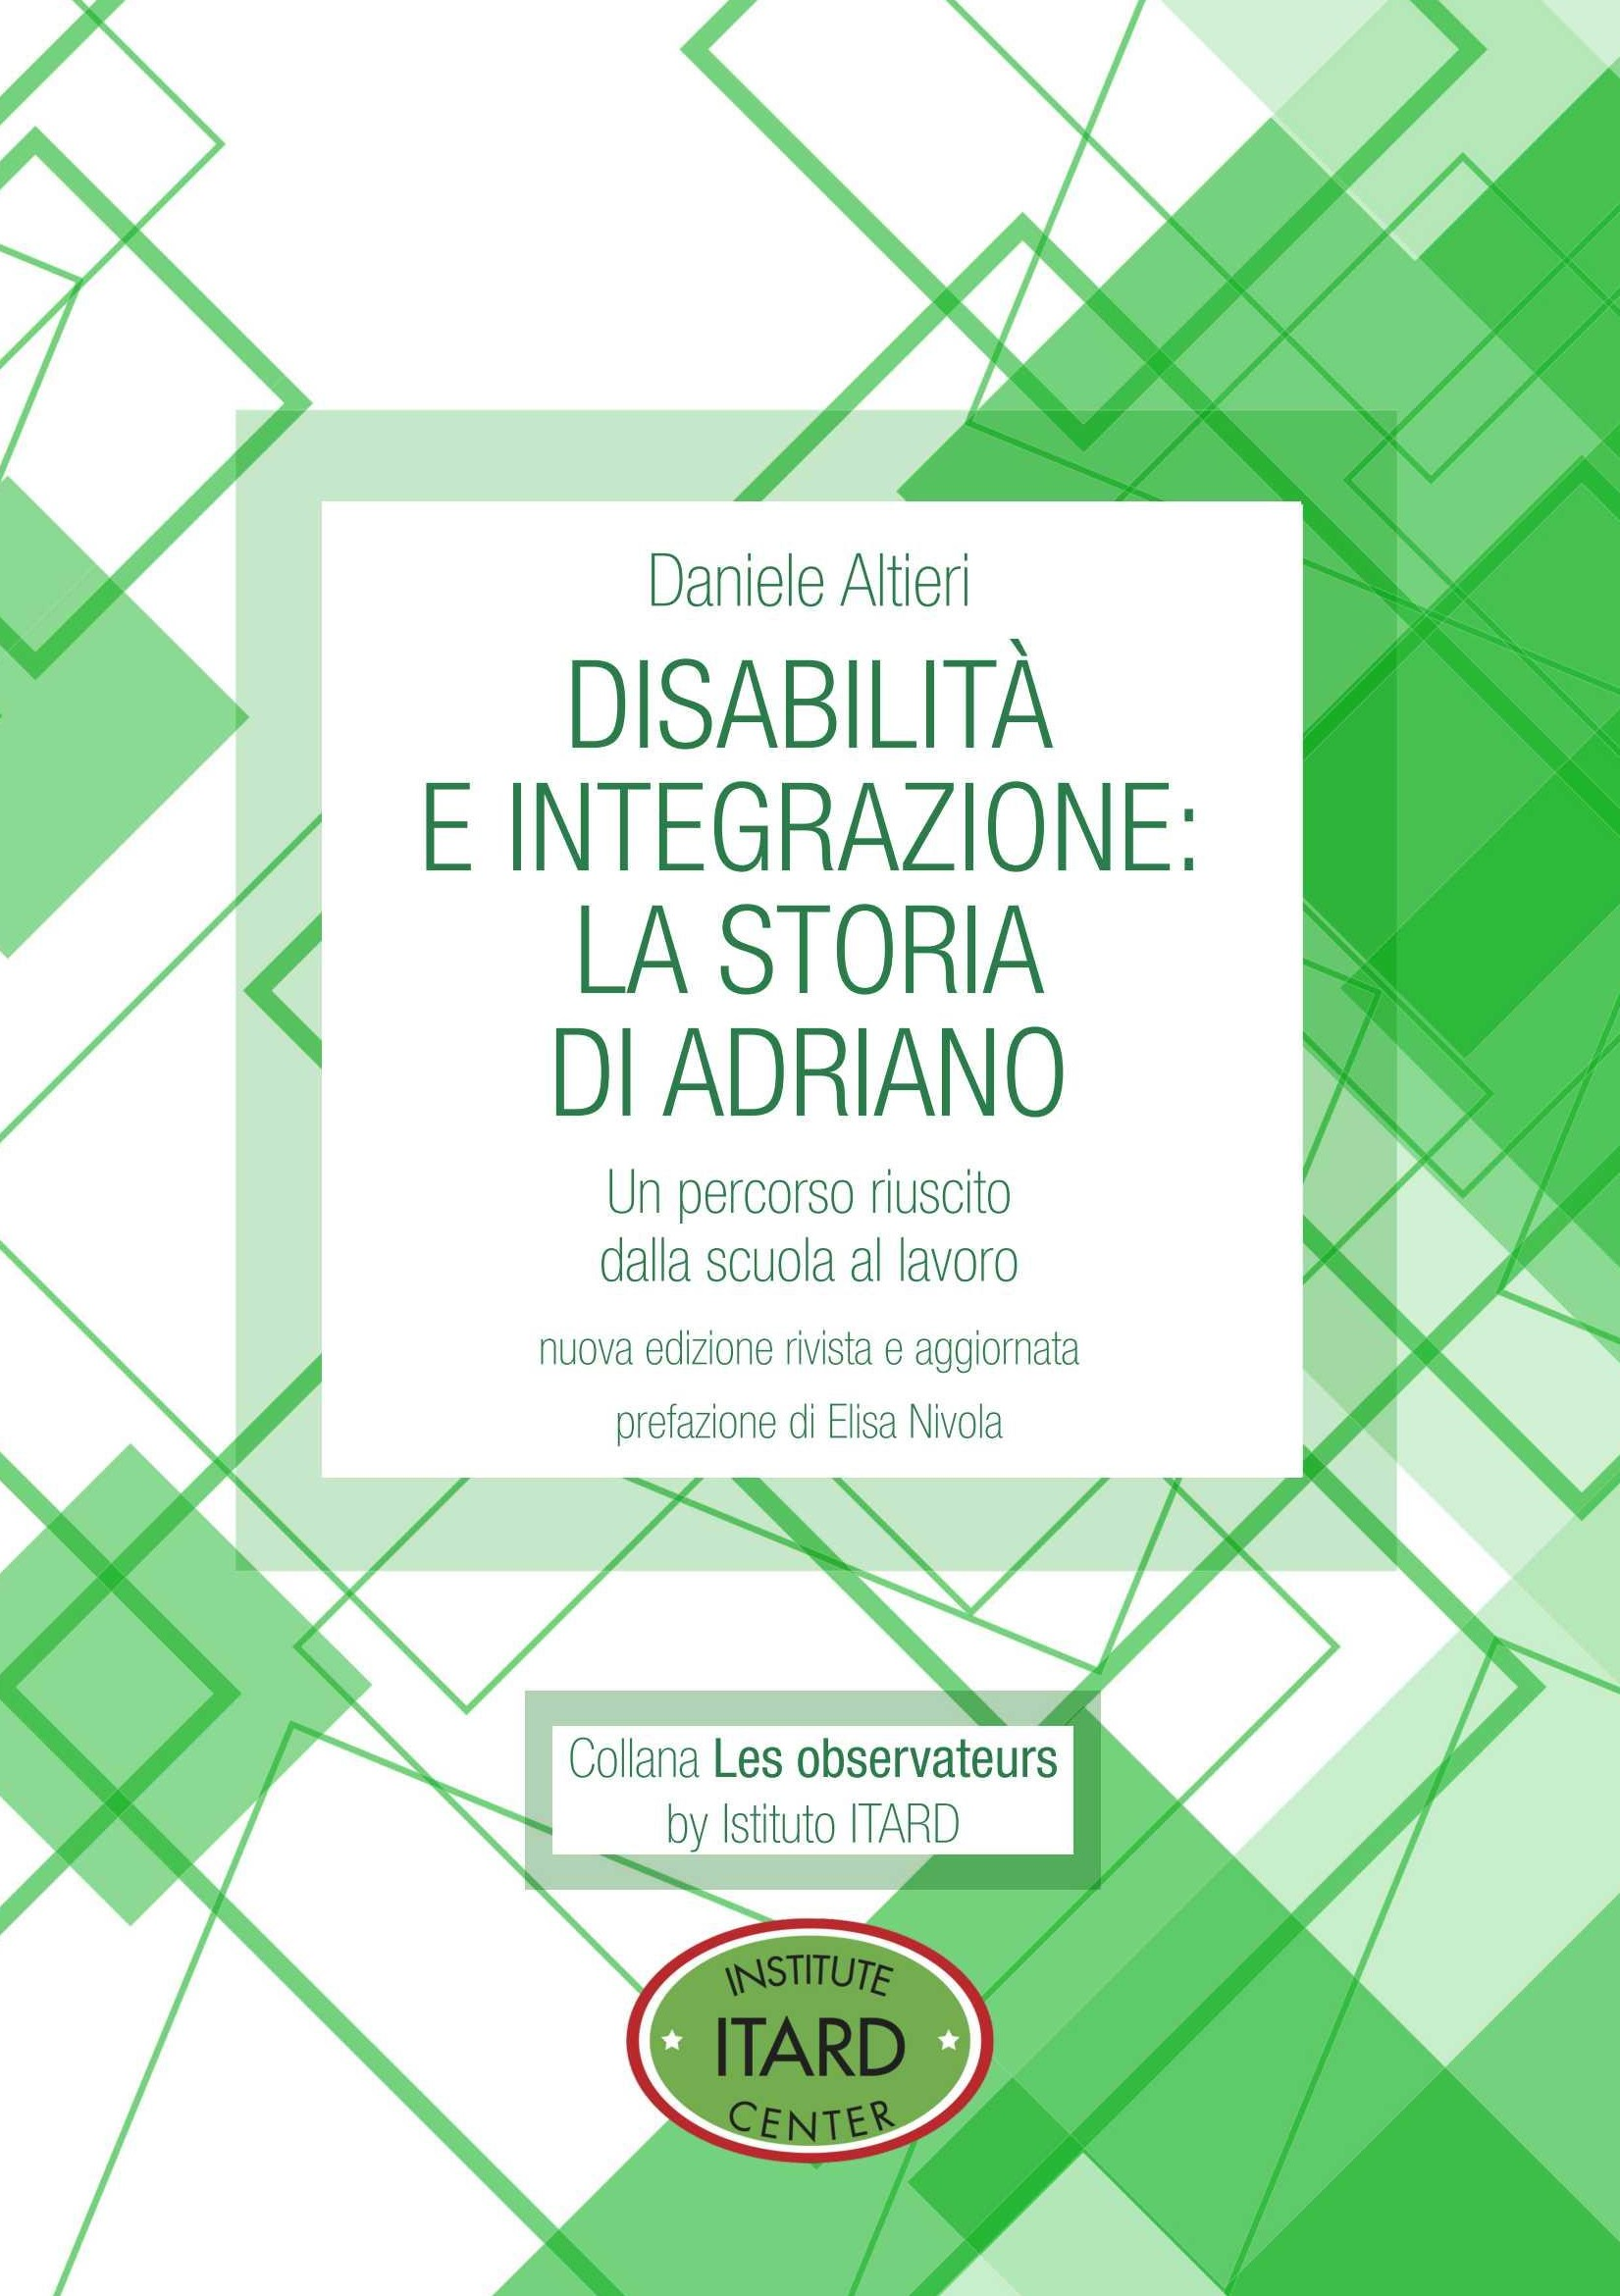 Disabilità e integrazione: la storia di Adriano